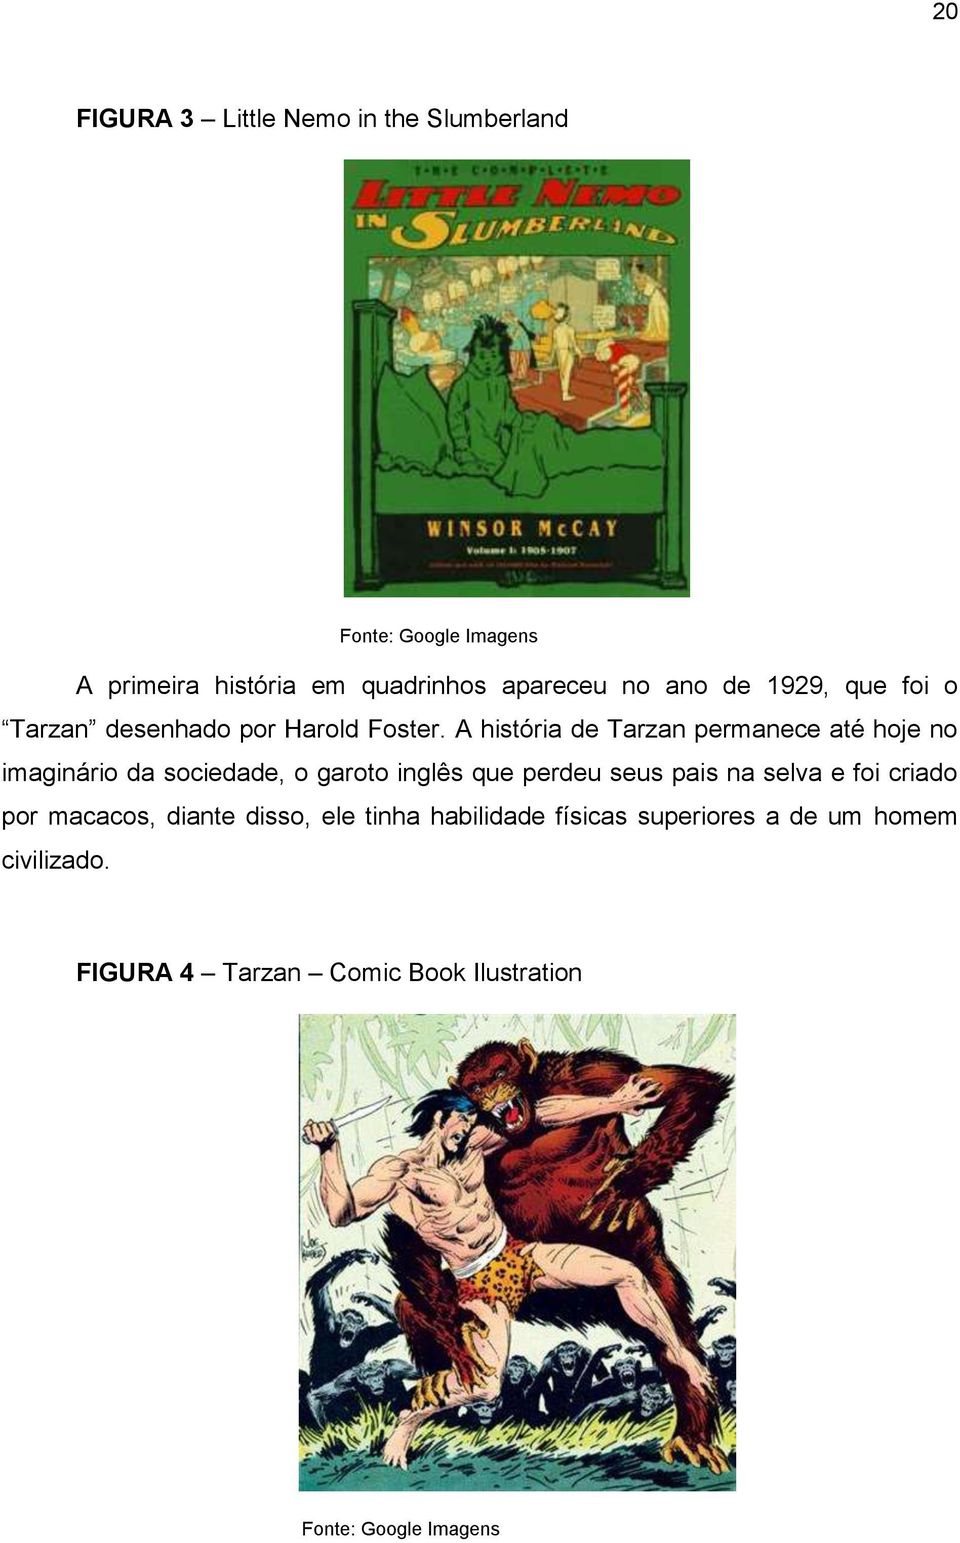 A história de Tarzan permanece até hoje no imaginário da sociedade, o garoto inglês que perdeu seus pais na